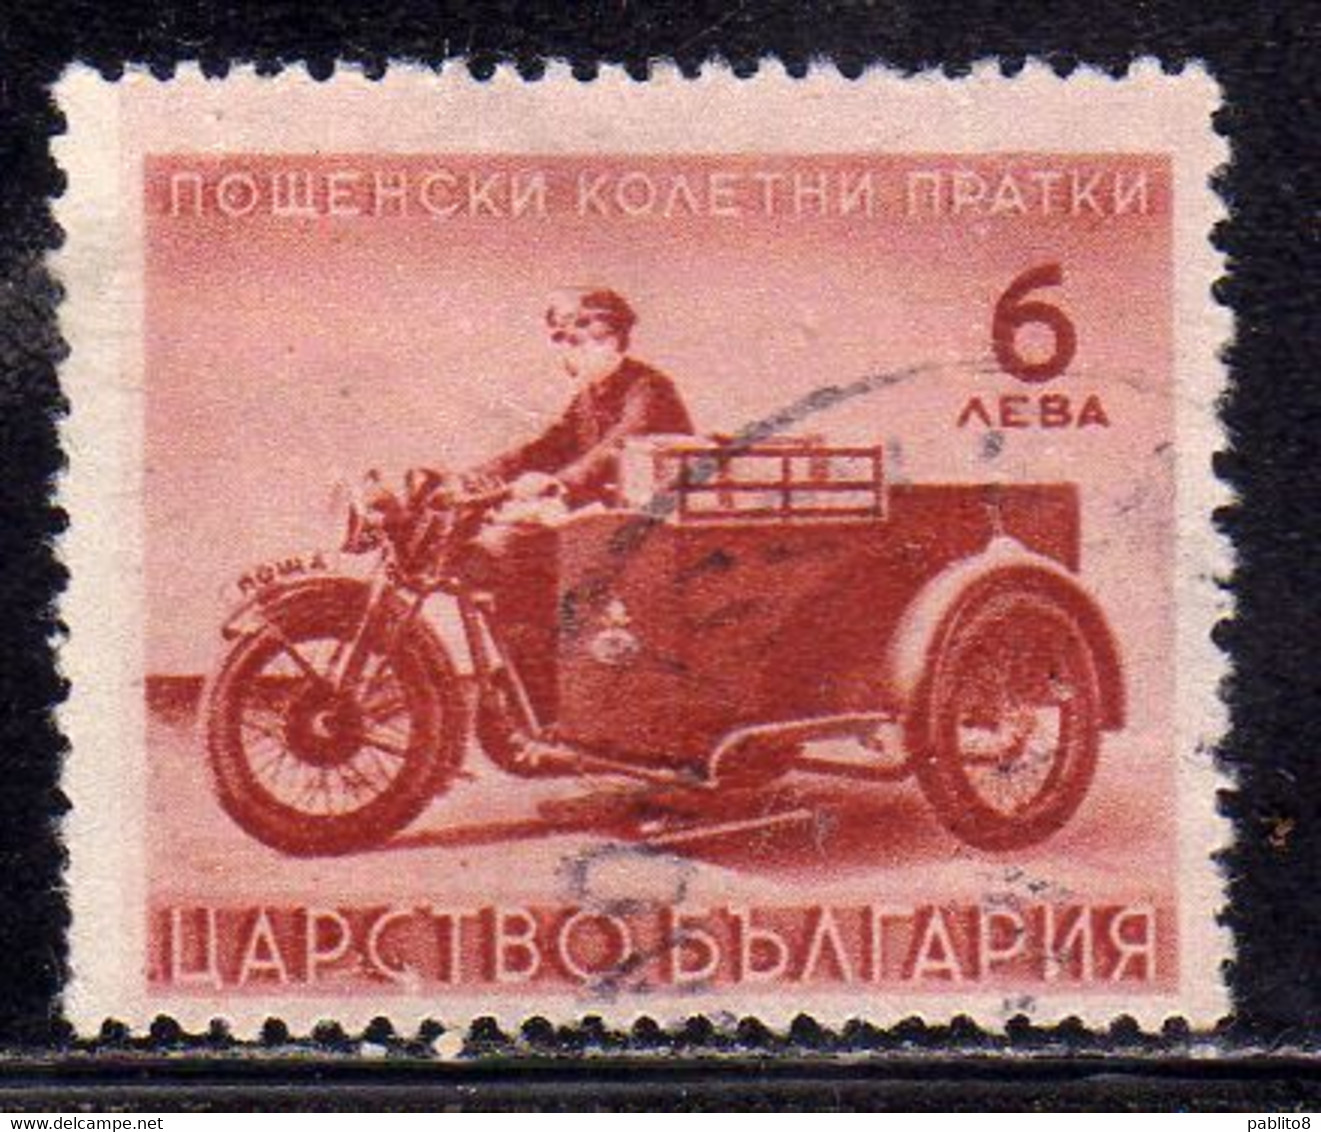 BULGARIA BULGARIE BULGARIEN 1942 PARCEL POST STAMPS PACCHI POSTALI MOTORCYCLE 6L USATO USED OBLITERE' - Sellos De Servicio